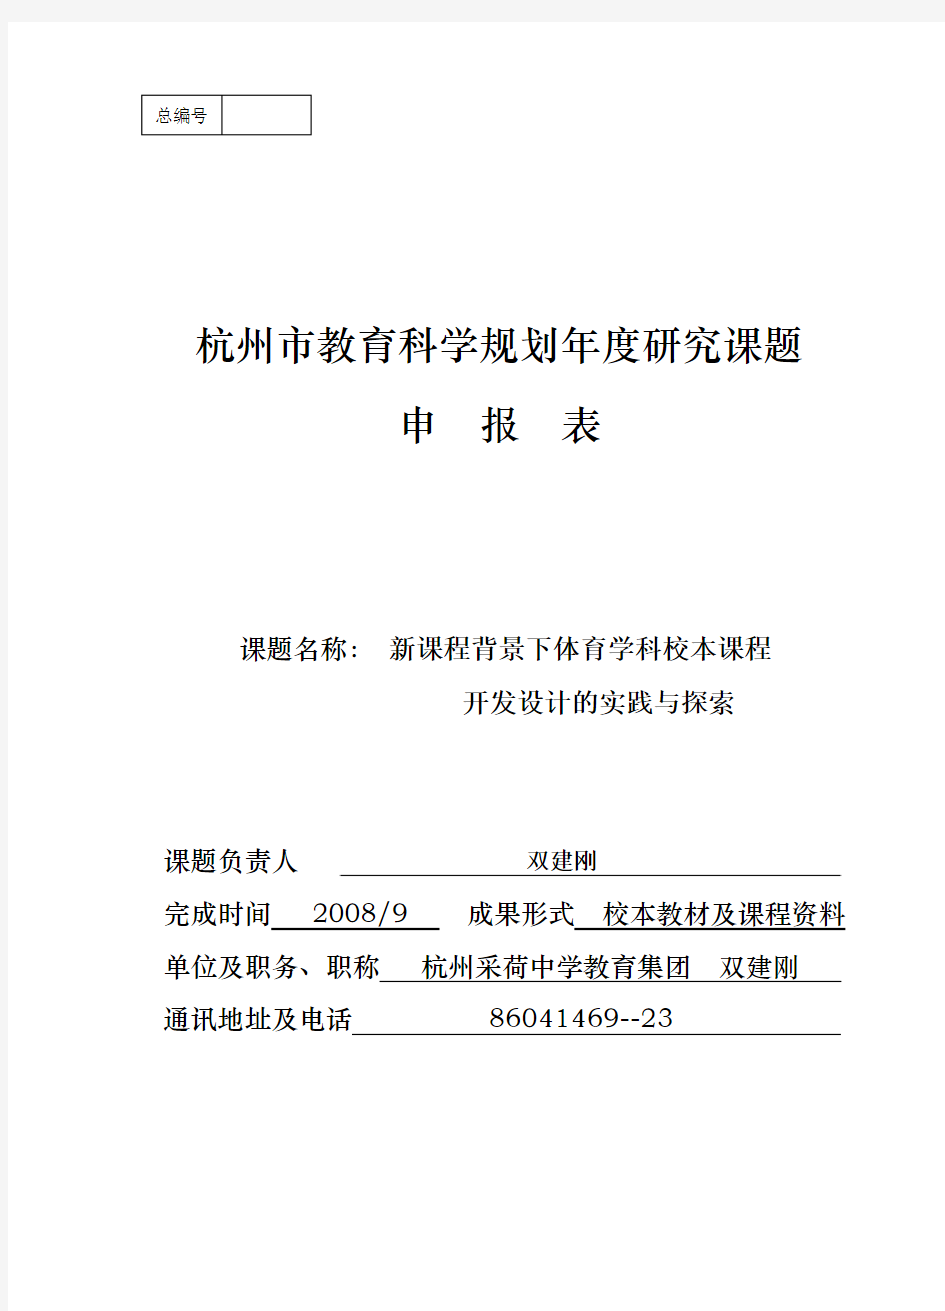 杭州市教育科学规划年度研究课题